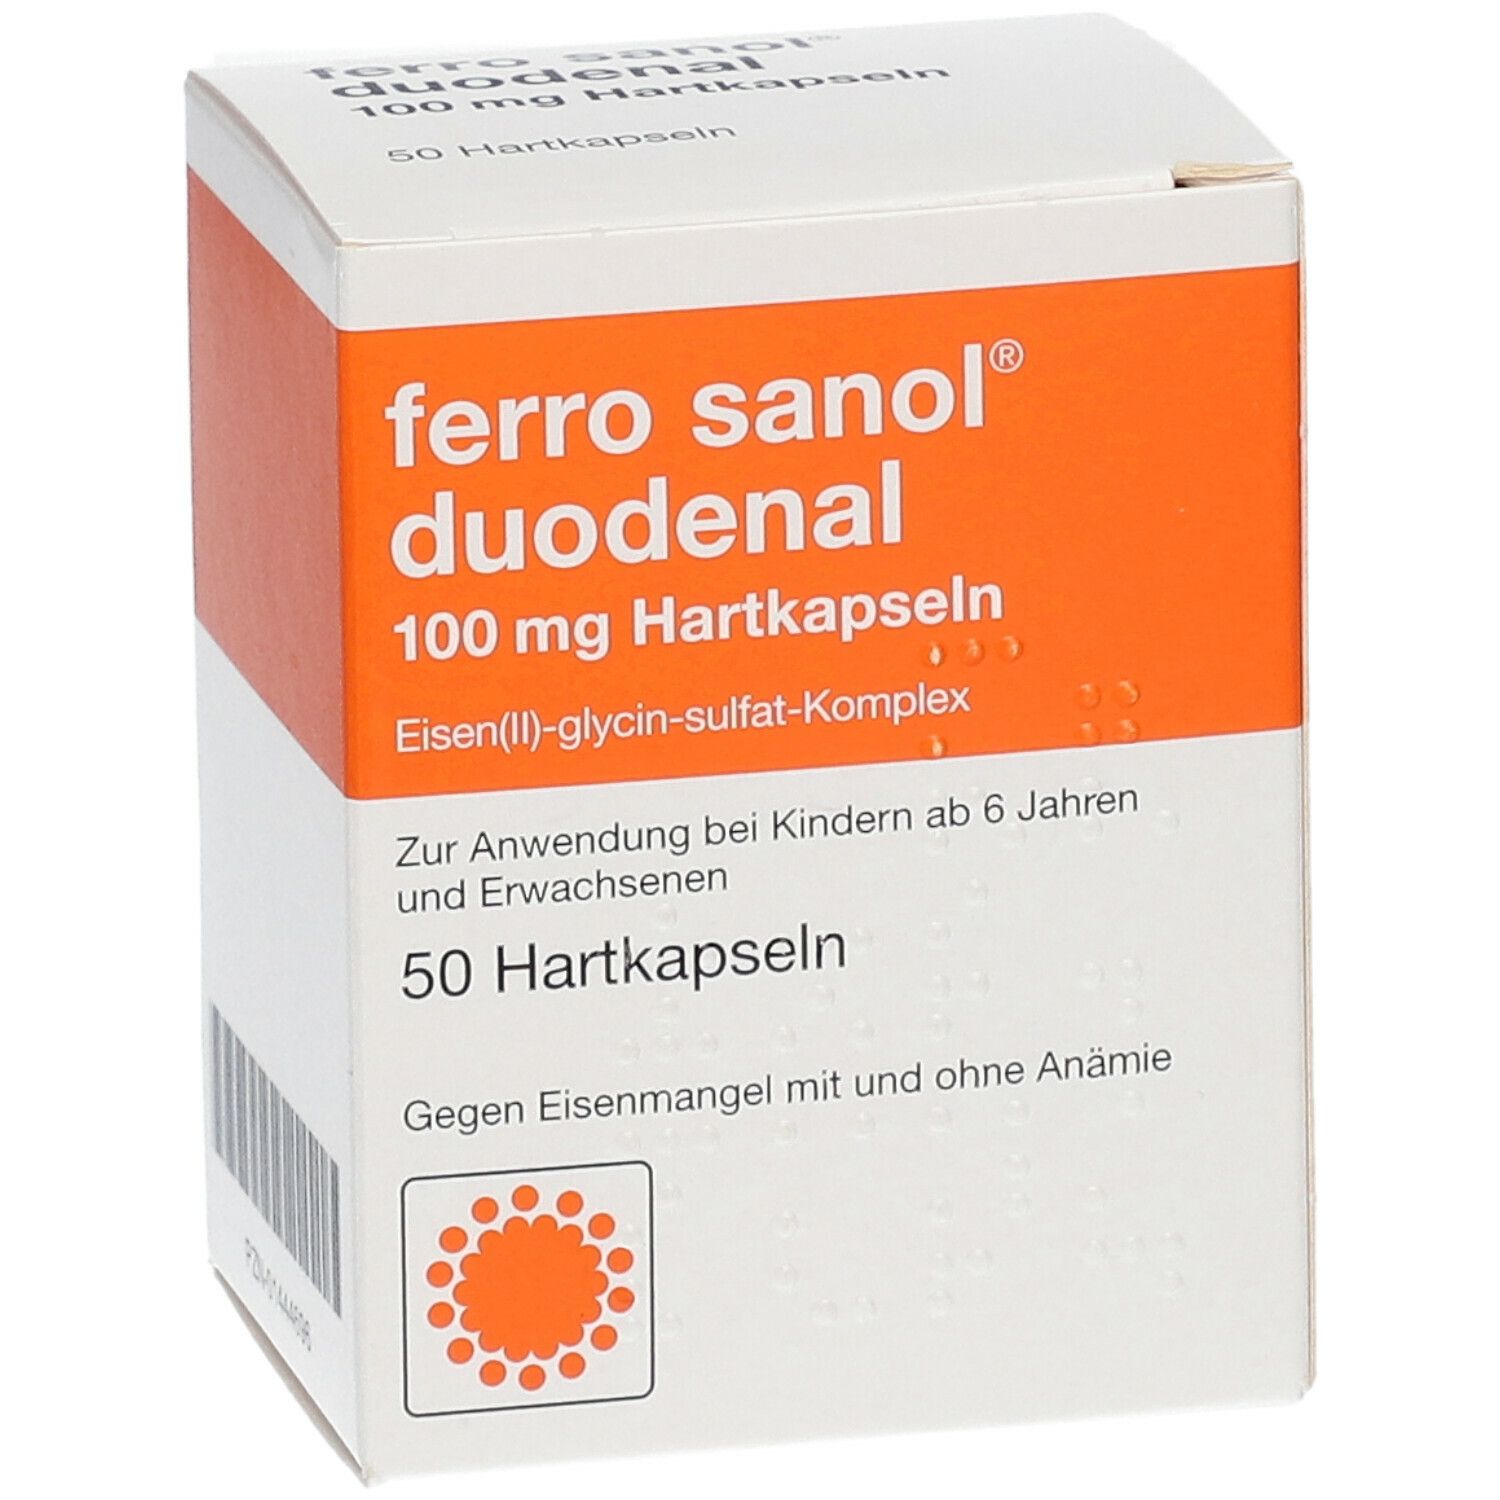 ferro sanol® duodenal